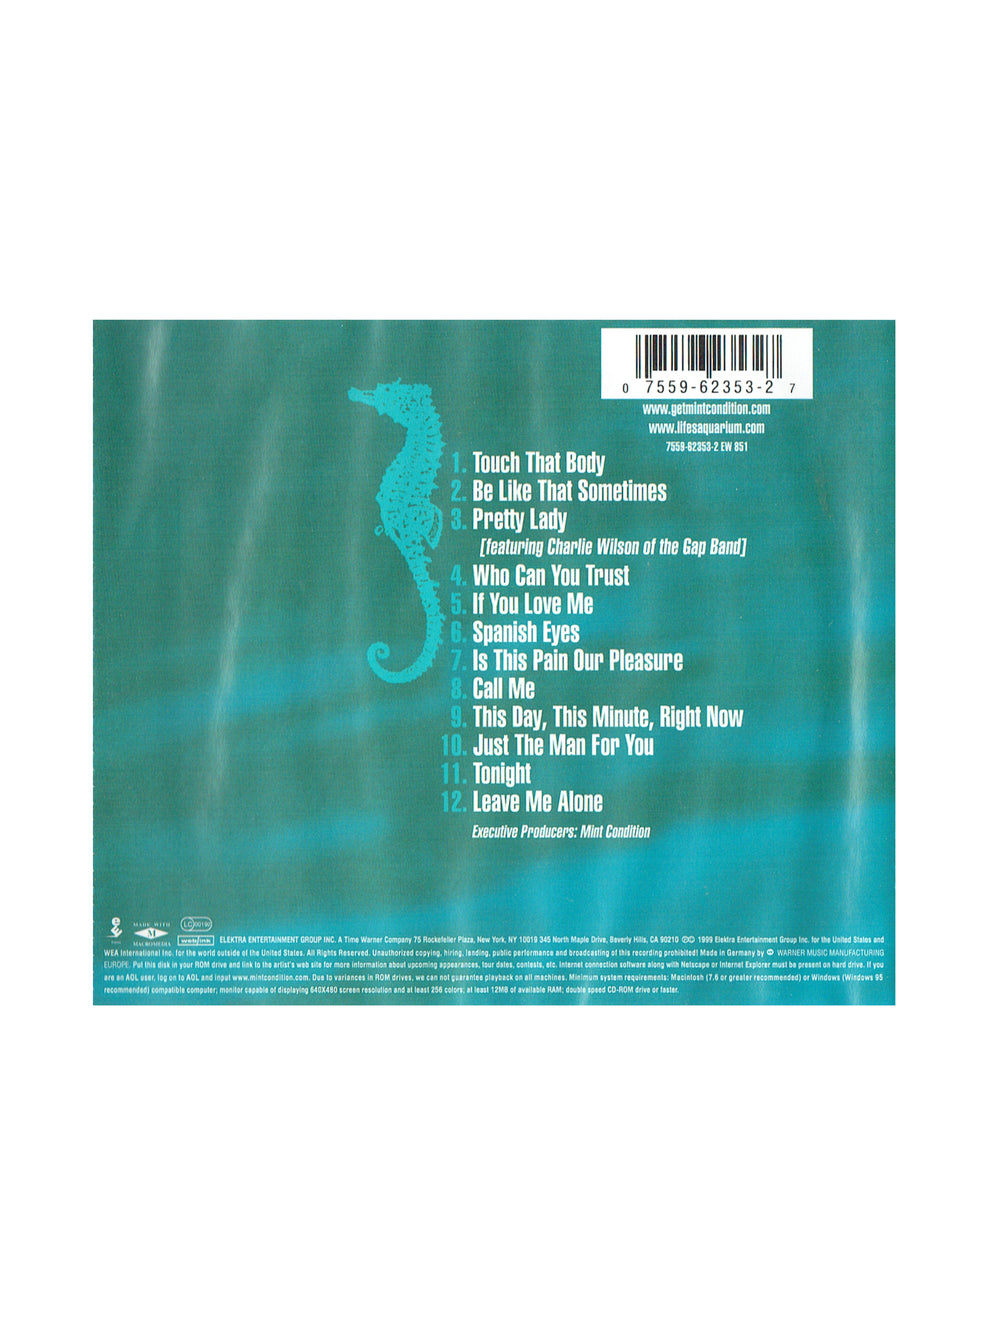 Mint Condition Life's Aquarium CD Album Prince